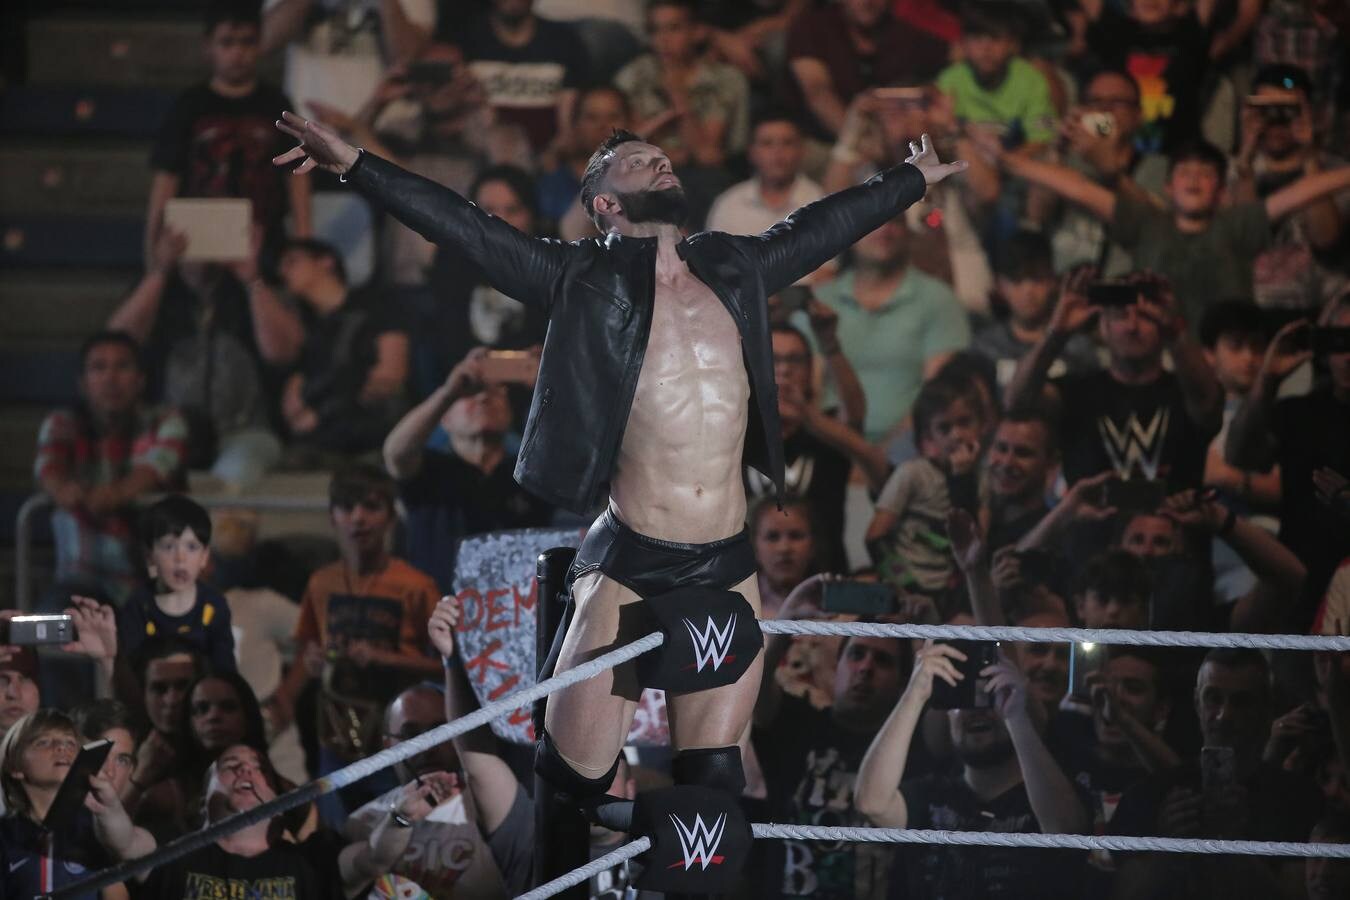 En e Palacio de los Deportes José María Martín Carpena, todas las superestrellas de la WWE Live: Roman Reigns, Alexa Bliss, Dean Ambrose o Seth Rollins